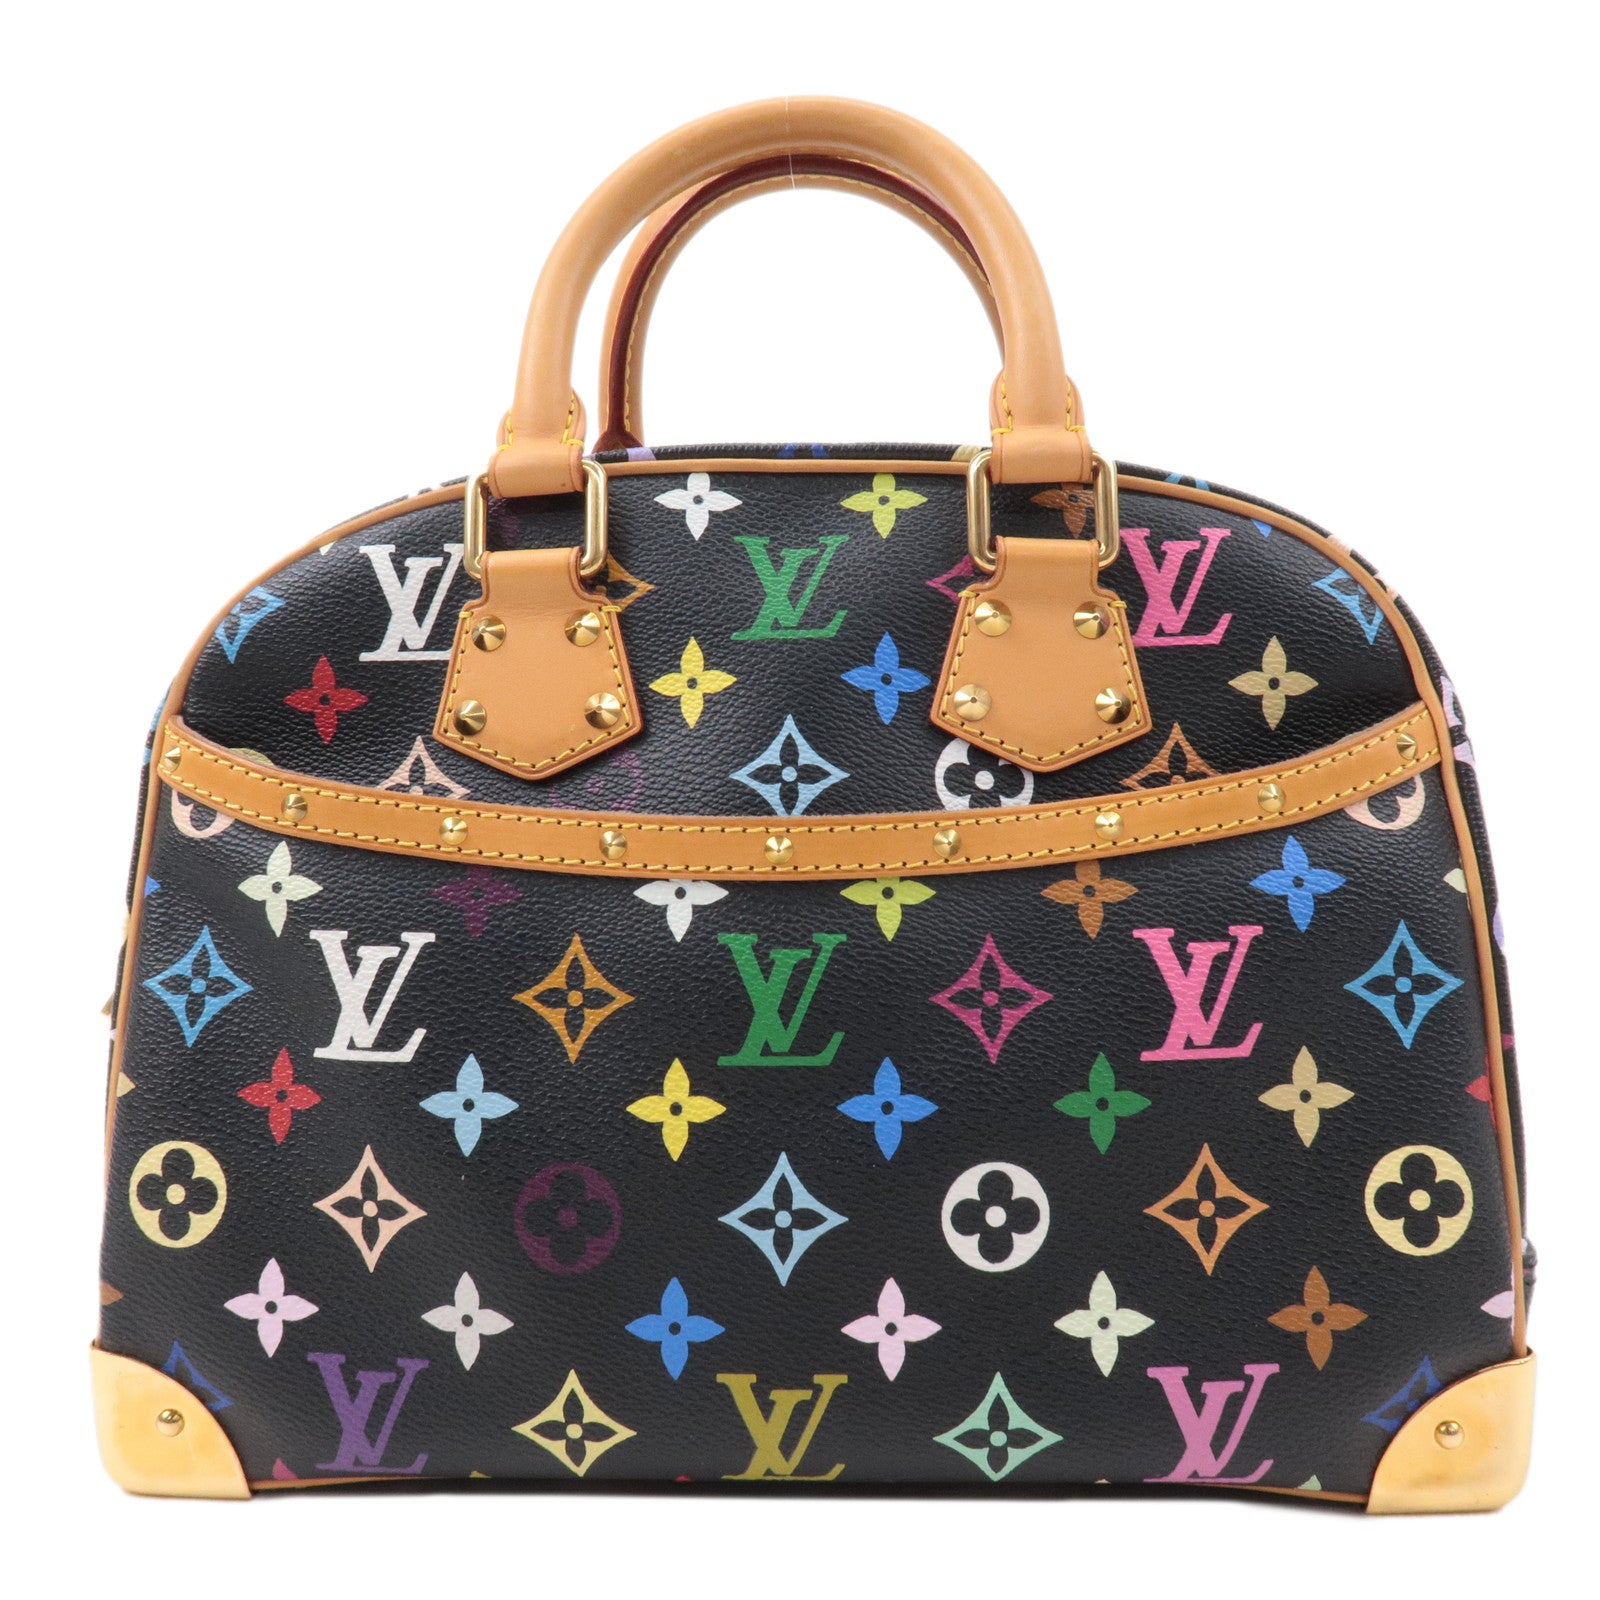 Louis Vuitton Monogram Trouville, Louis Vuitton Handbags